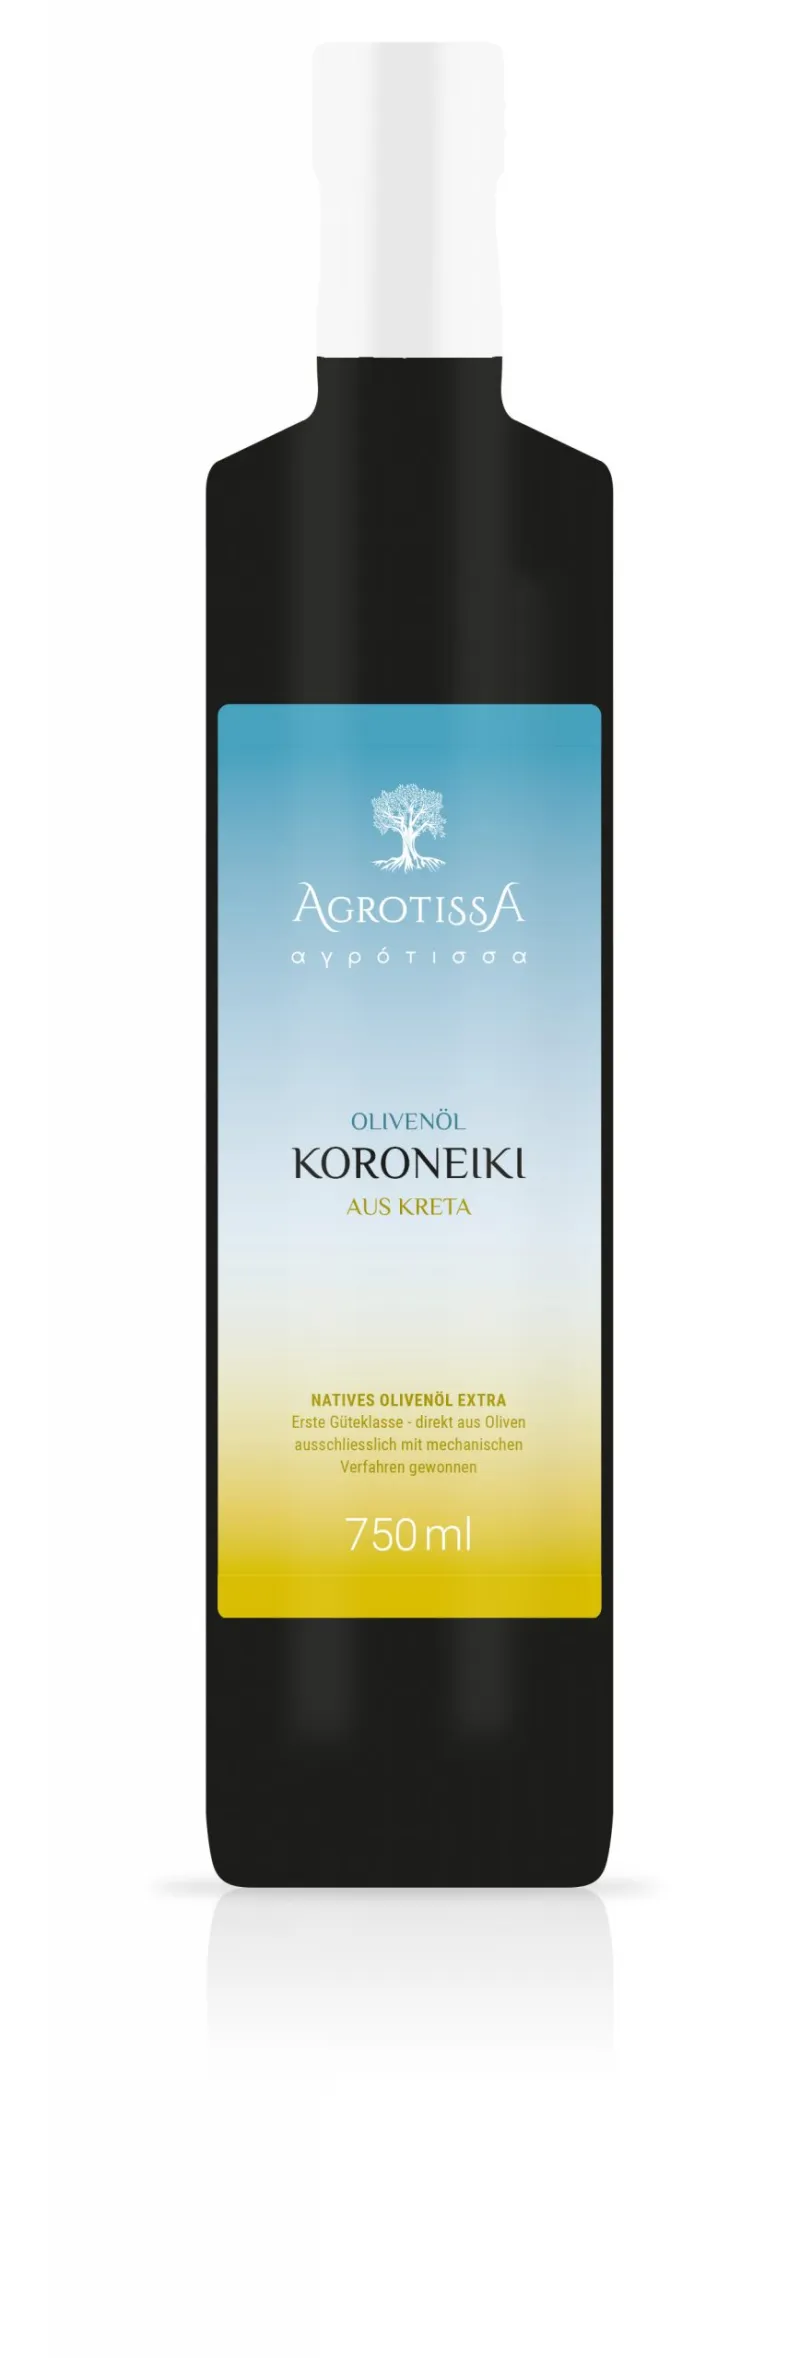 AGROTISSA Olivenöl aus Kreta